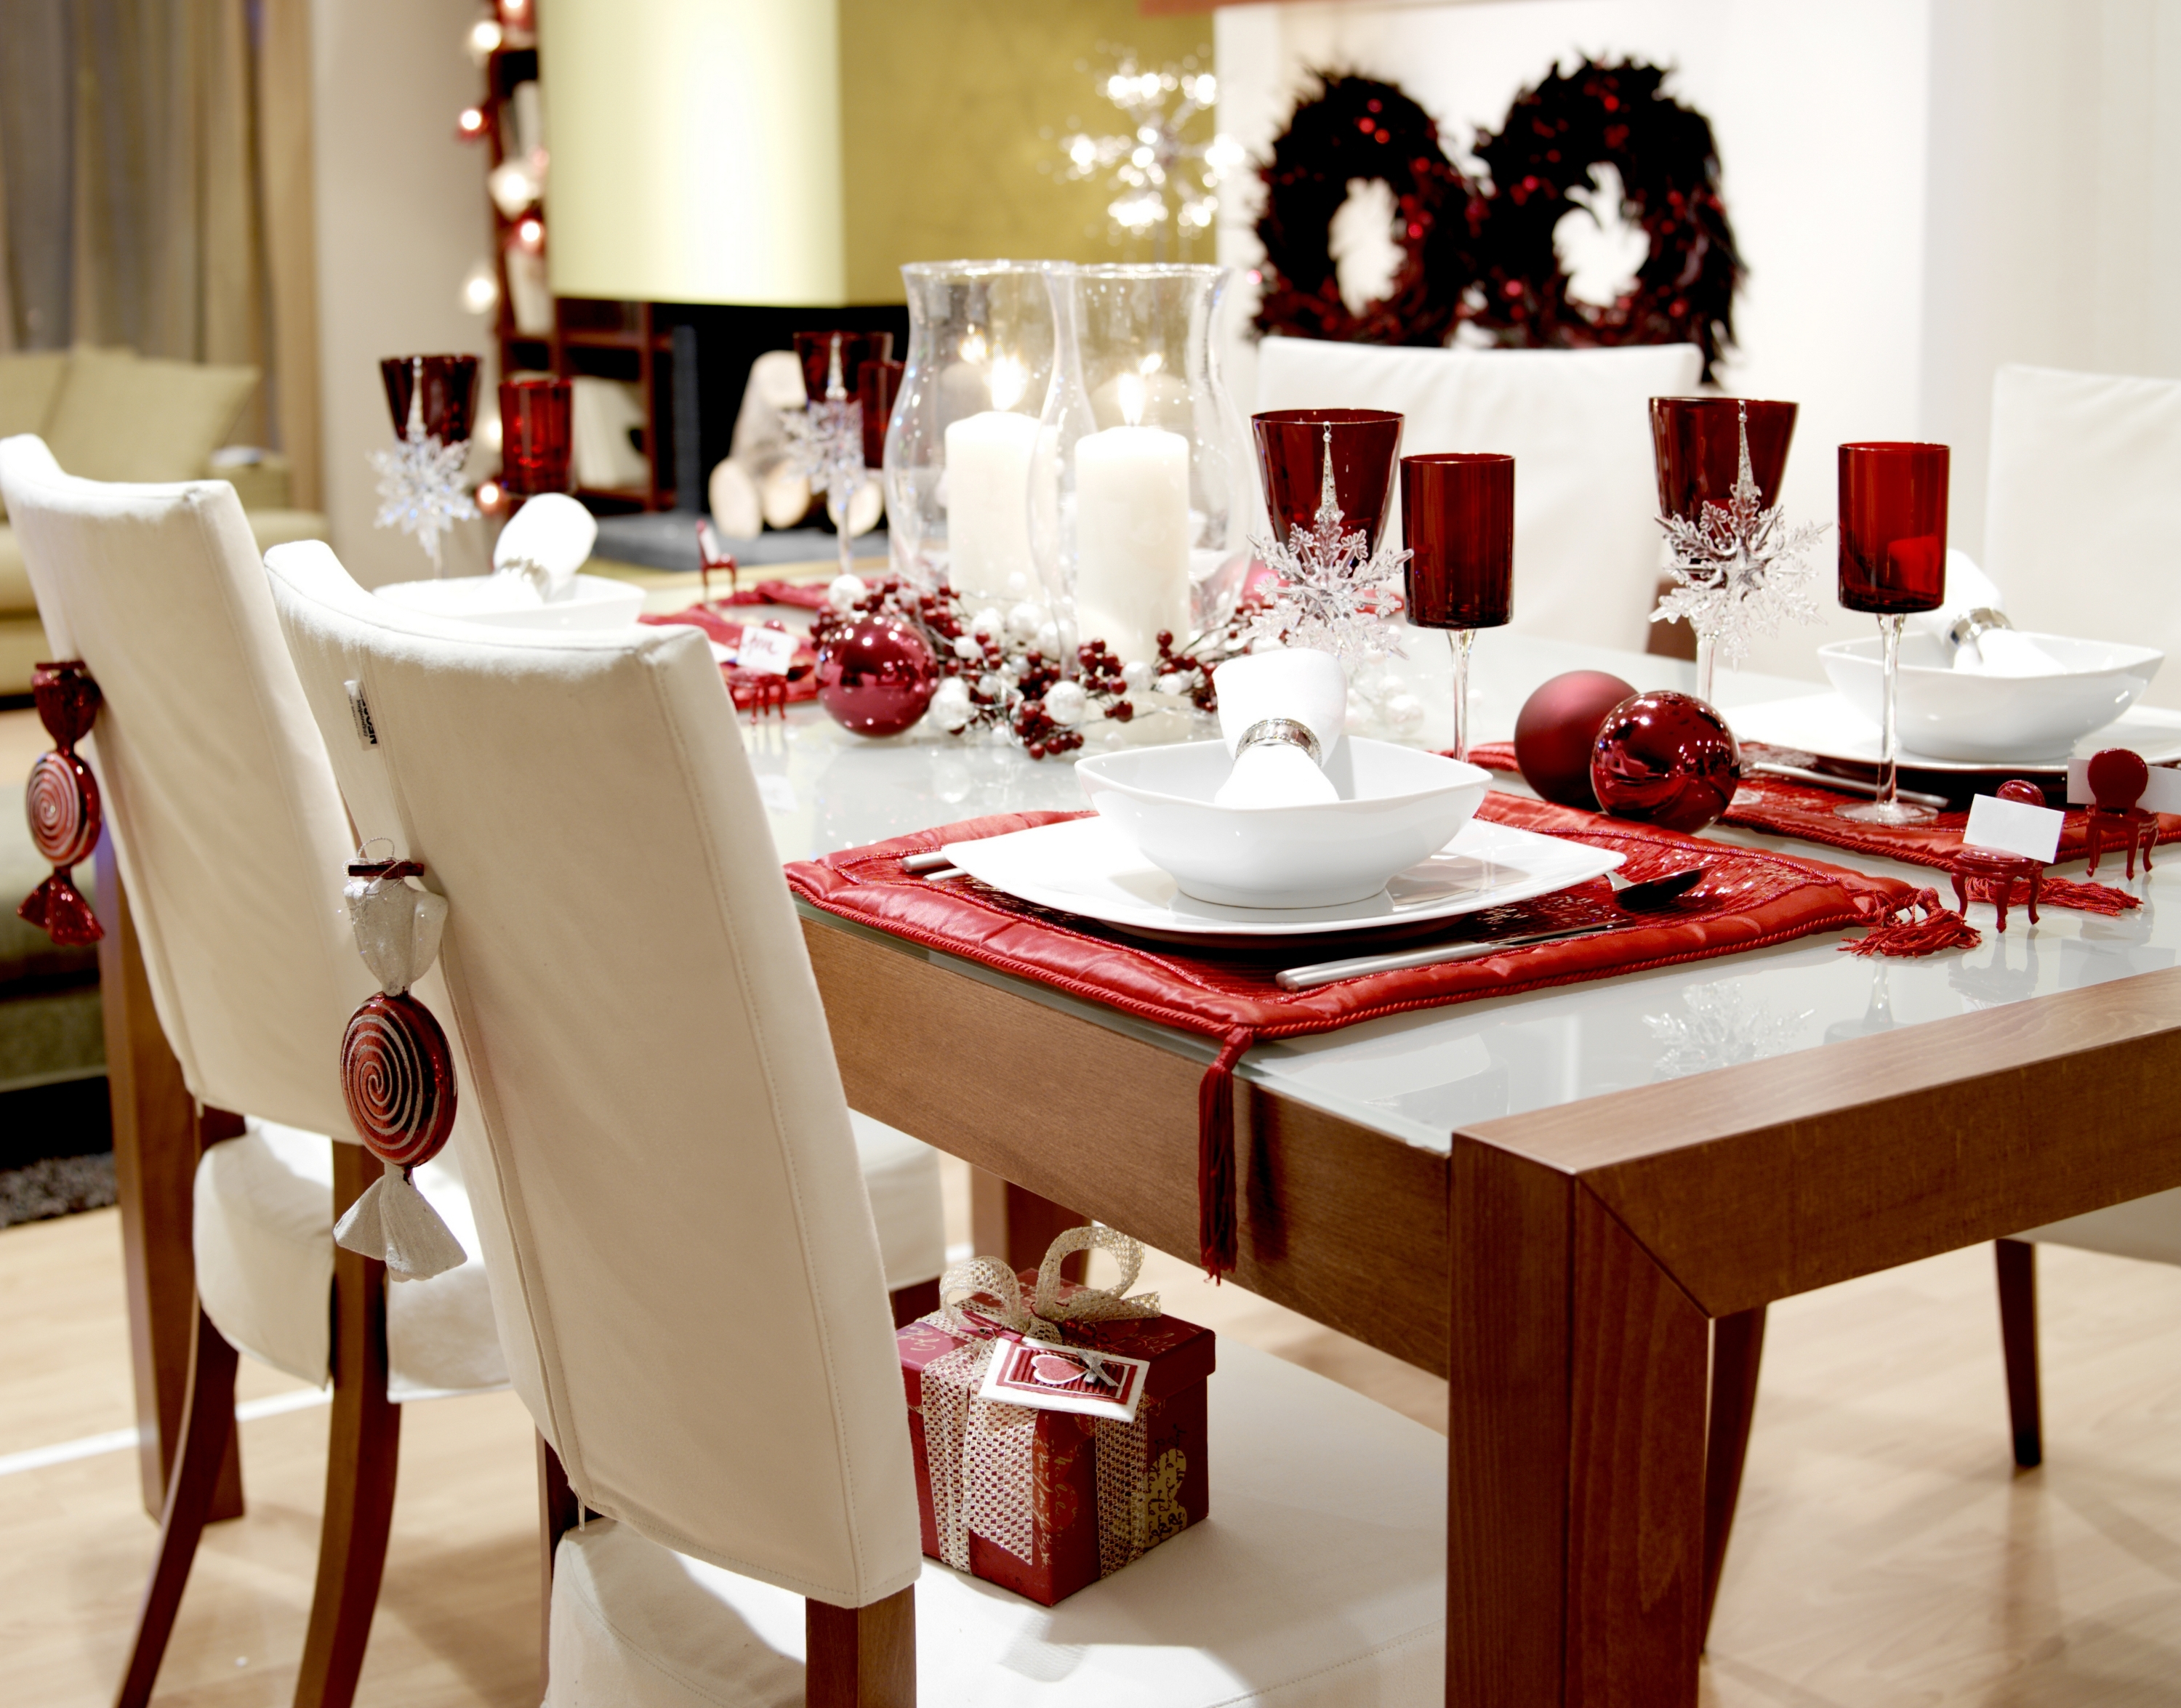 Красивый обеденный стол. Красиво сервированный стол. Сервировка обеденного стола. Украшение обеденного стола. Сервировка новогоднего стола.